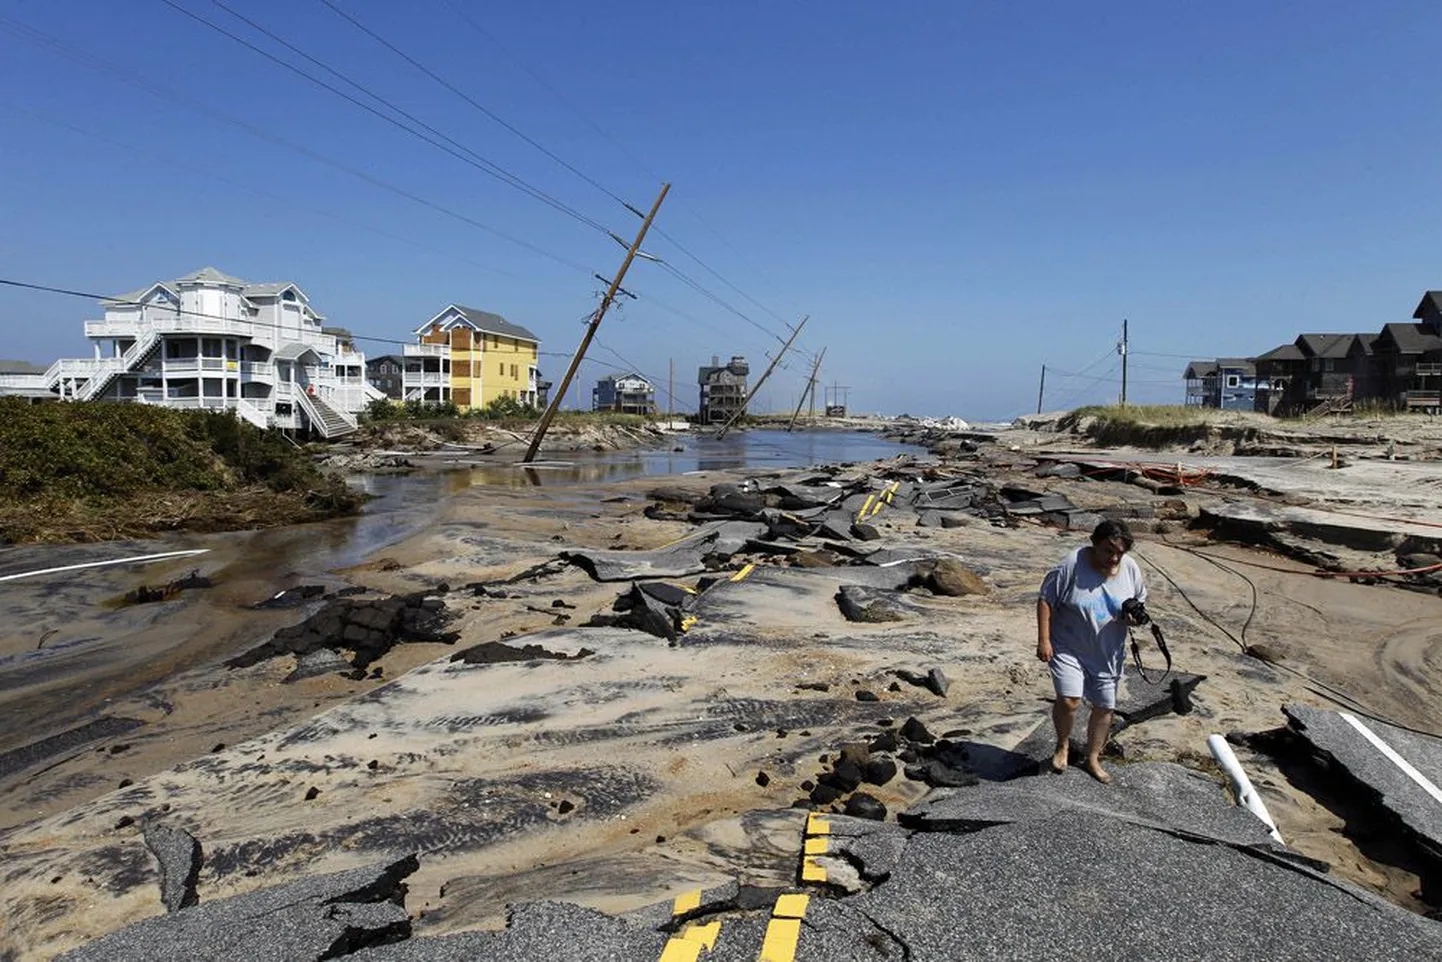 Irene’ile ette jäänud Rodanthe’is Põhja-  Carolina osariigis hävitas torm rannikut maismaaga ühendava tee. USA võimud tegelevad veel sadade teiste kahjustatud maanteede parandamisega.